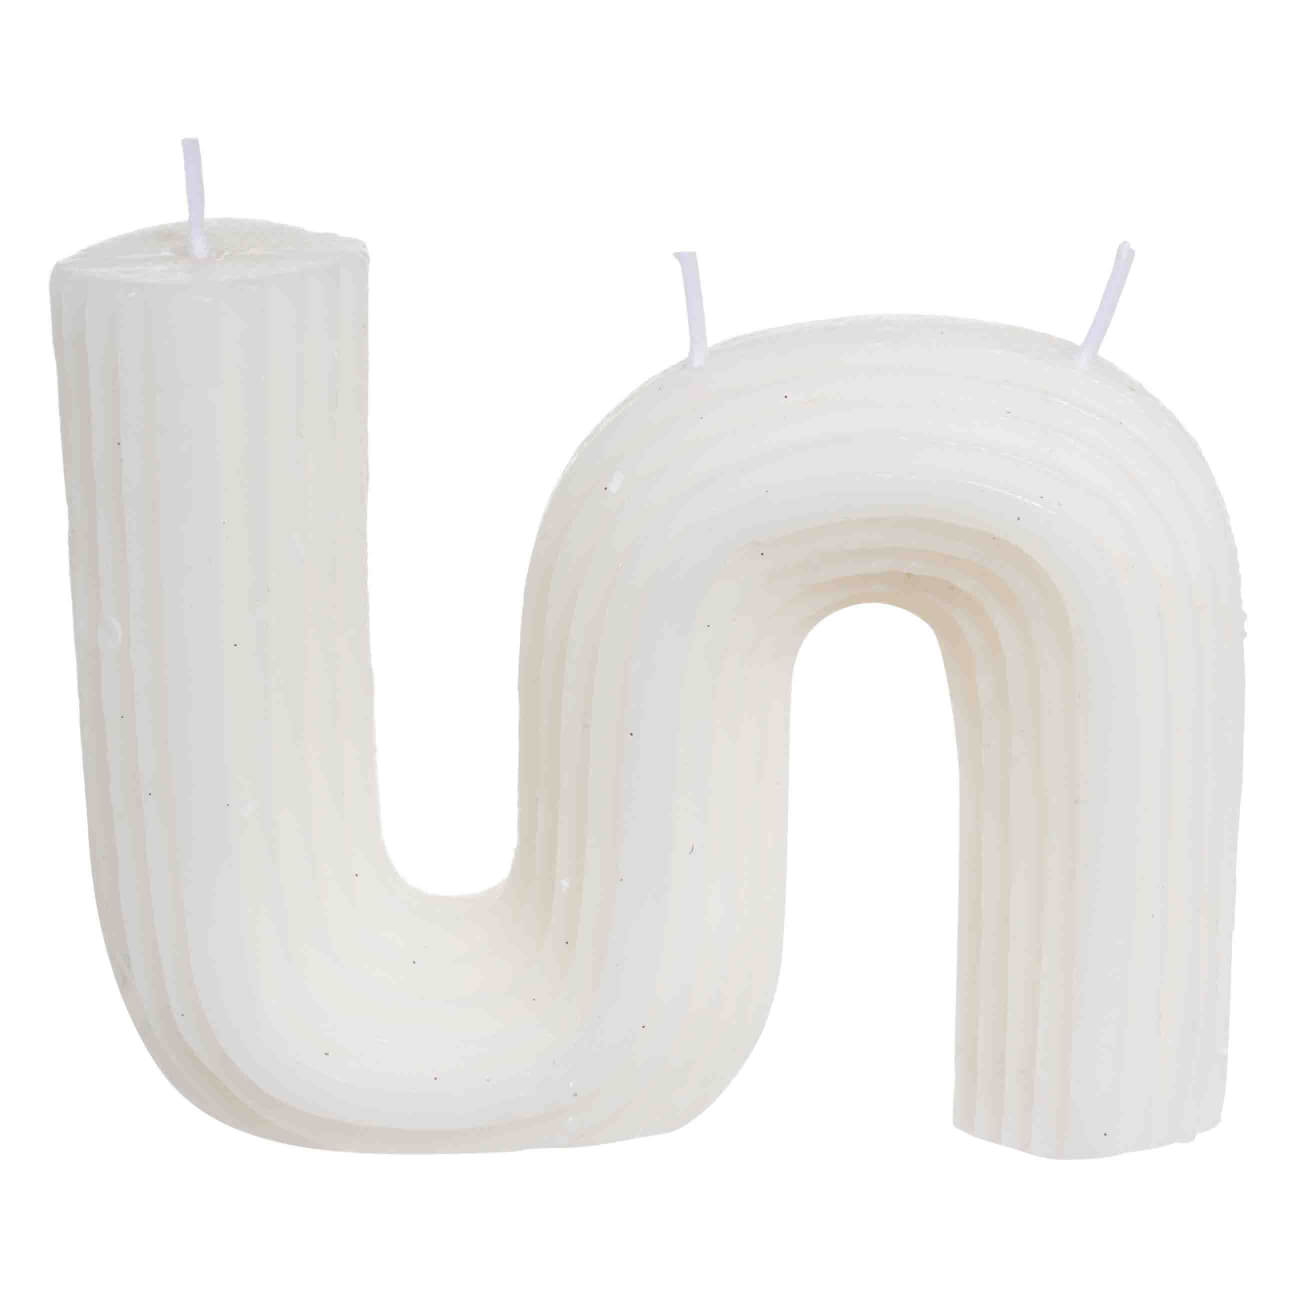 Свеча, 9 см, рифленая, белая, Зигзаг, Ribbed candle свеча цилиндр 6 3х9 см белая